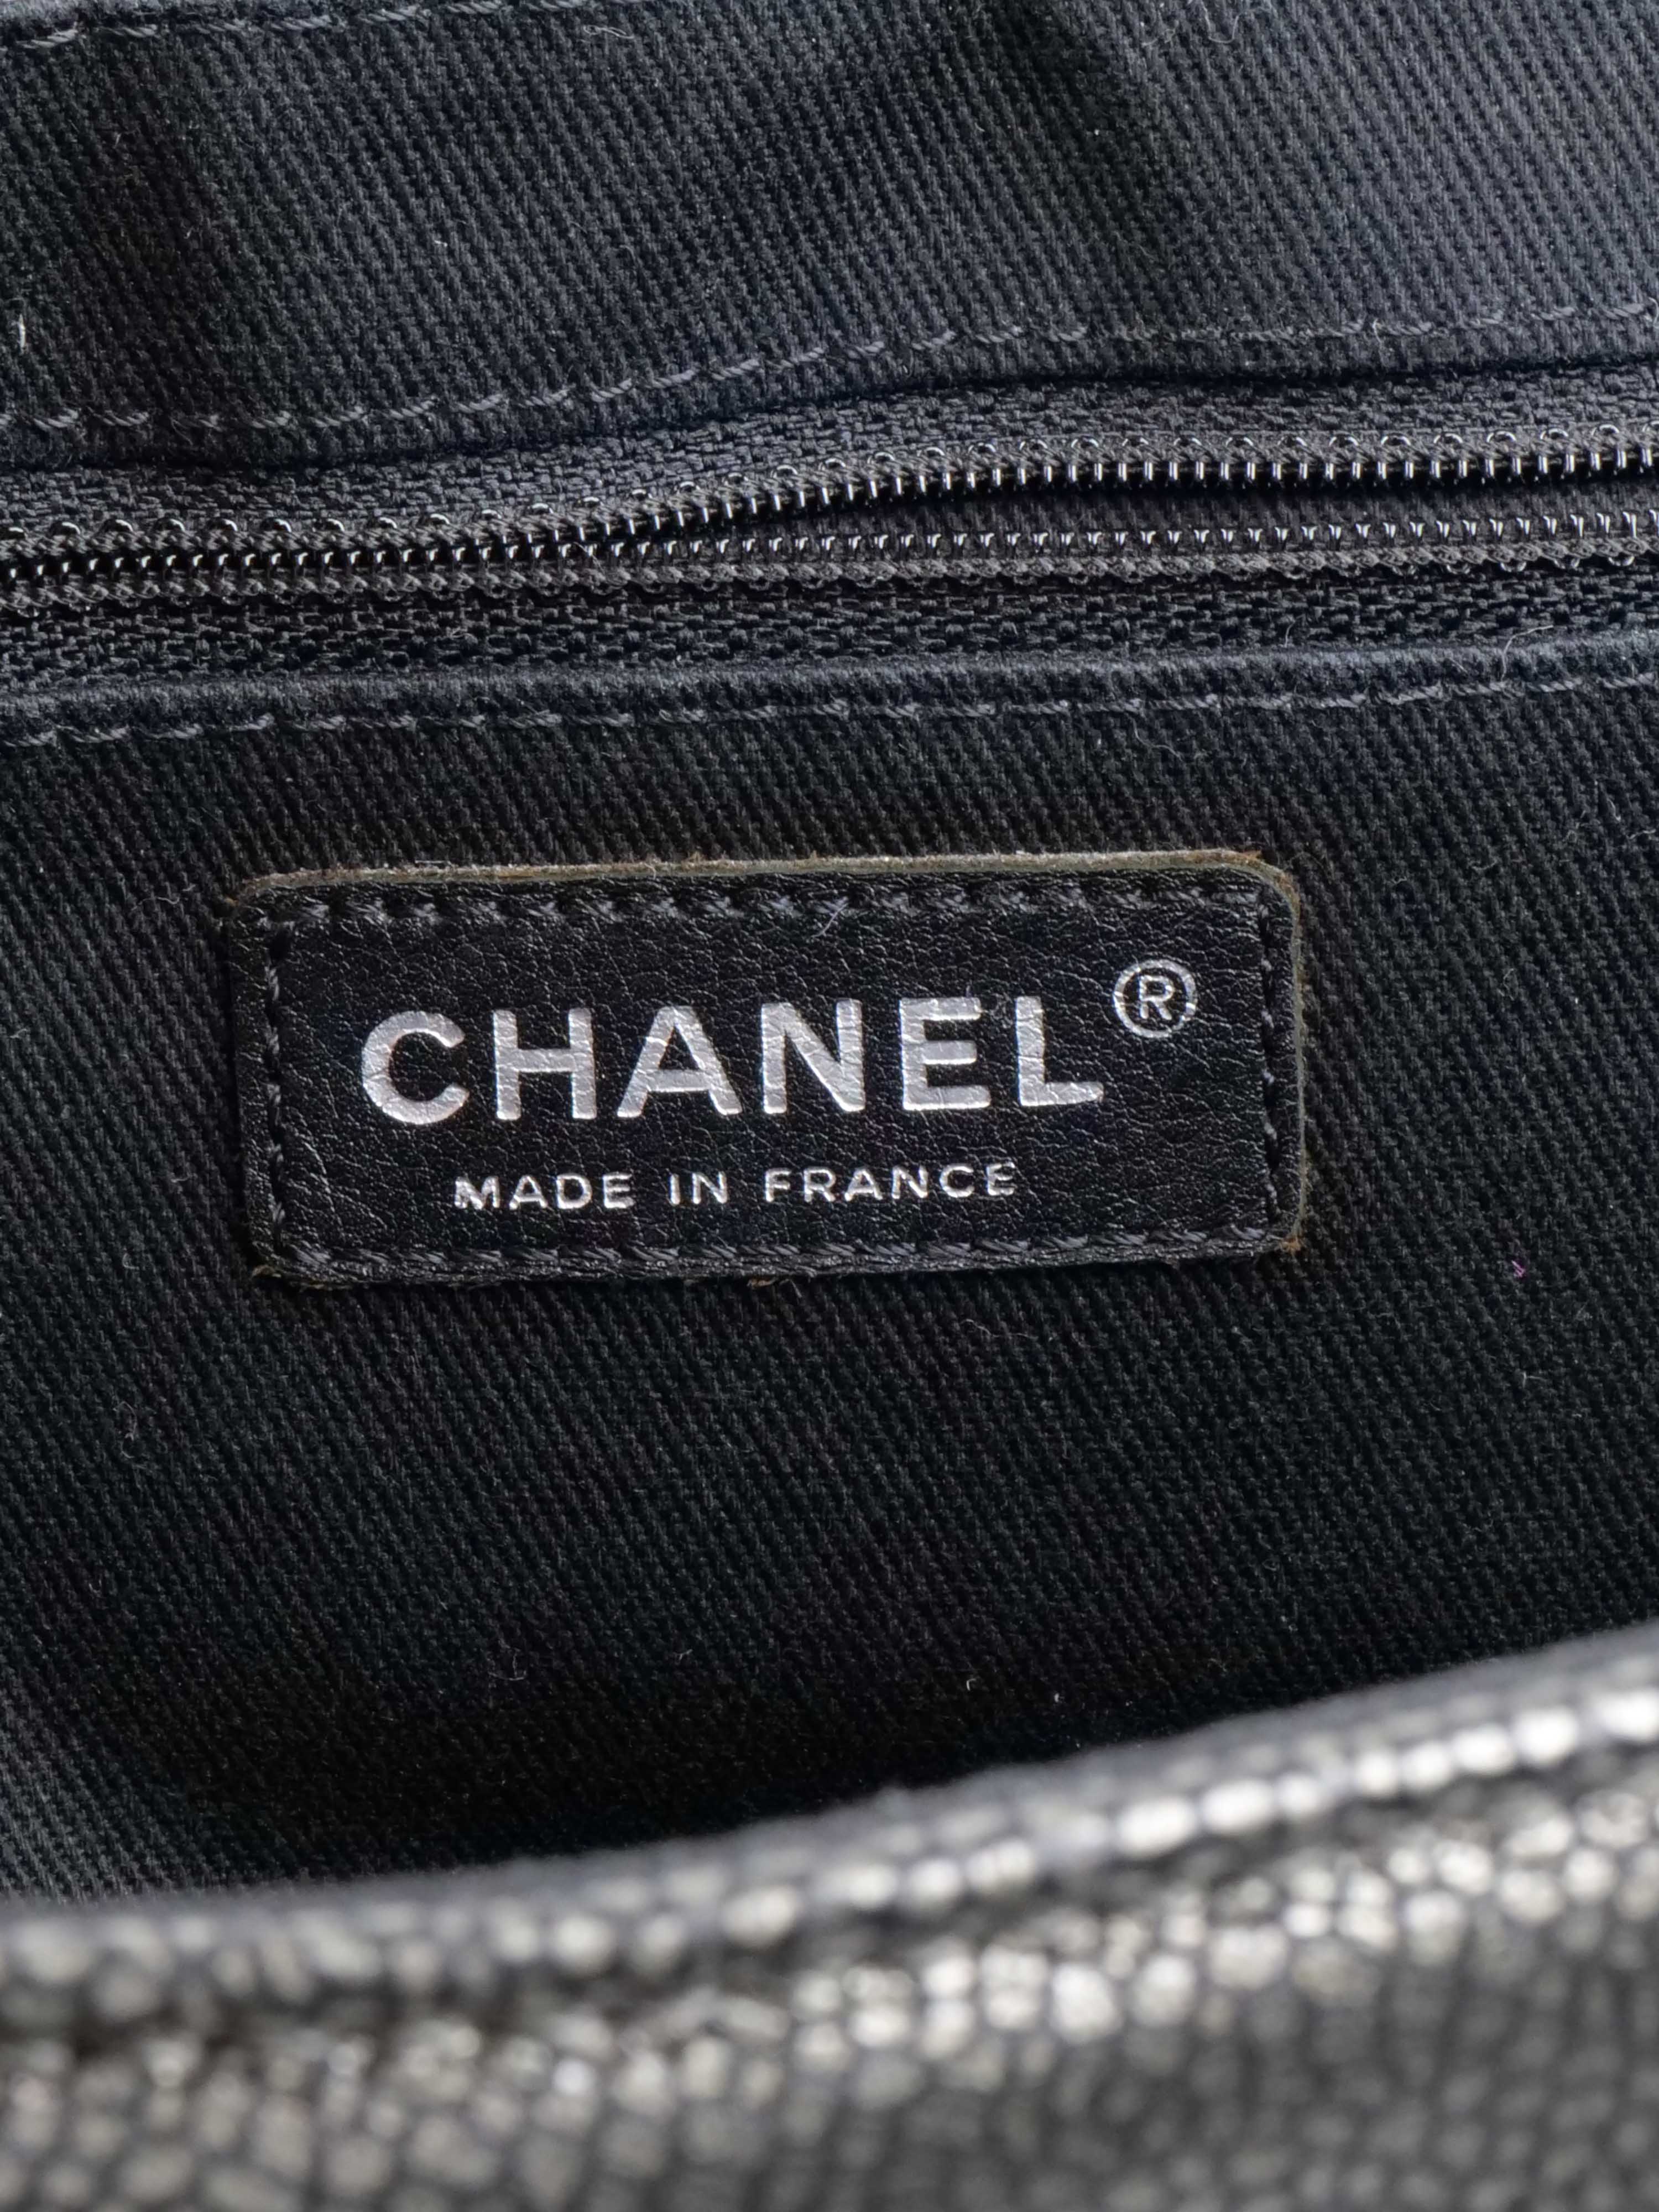 Chanel Mechanic Grey Half Moon Bag.